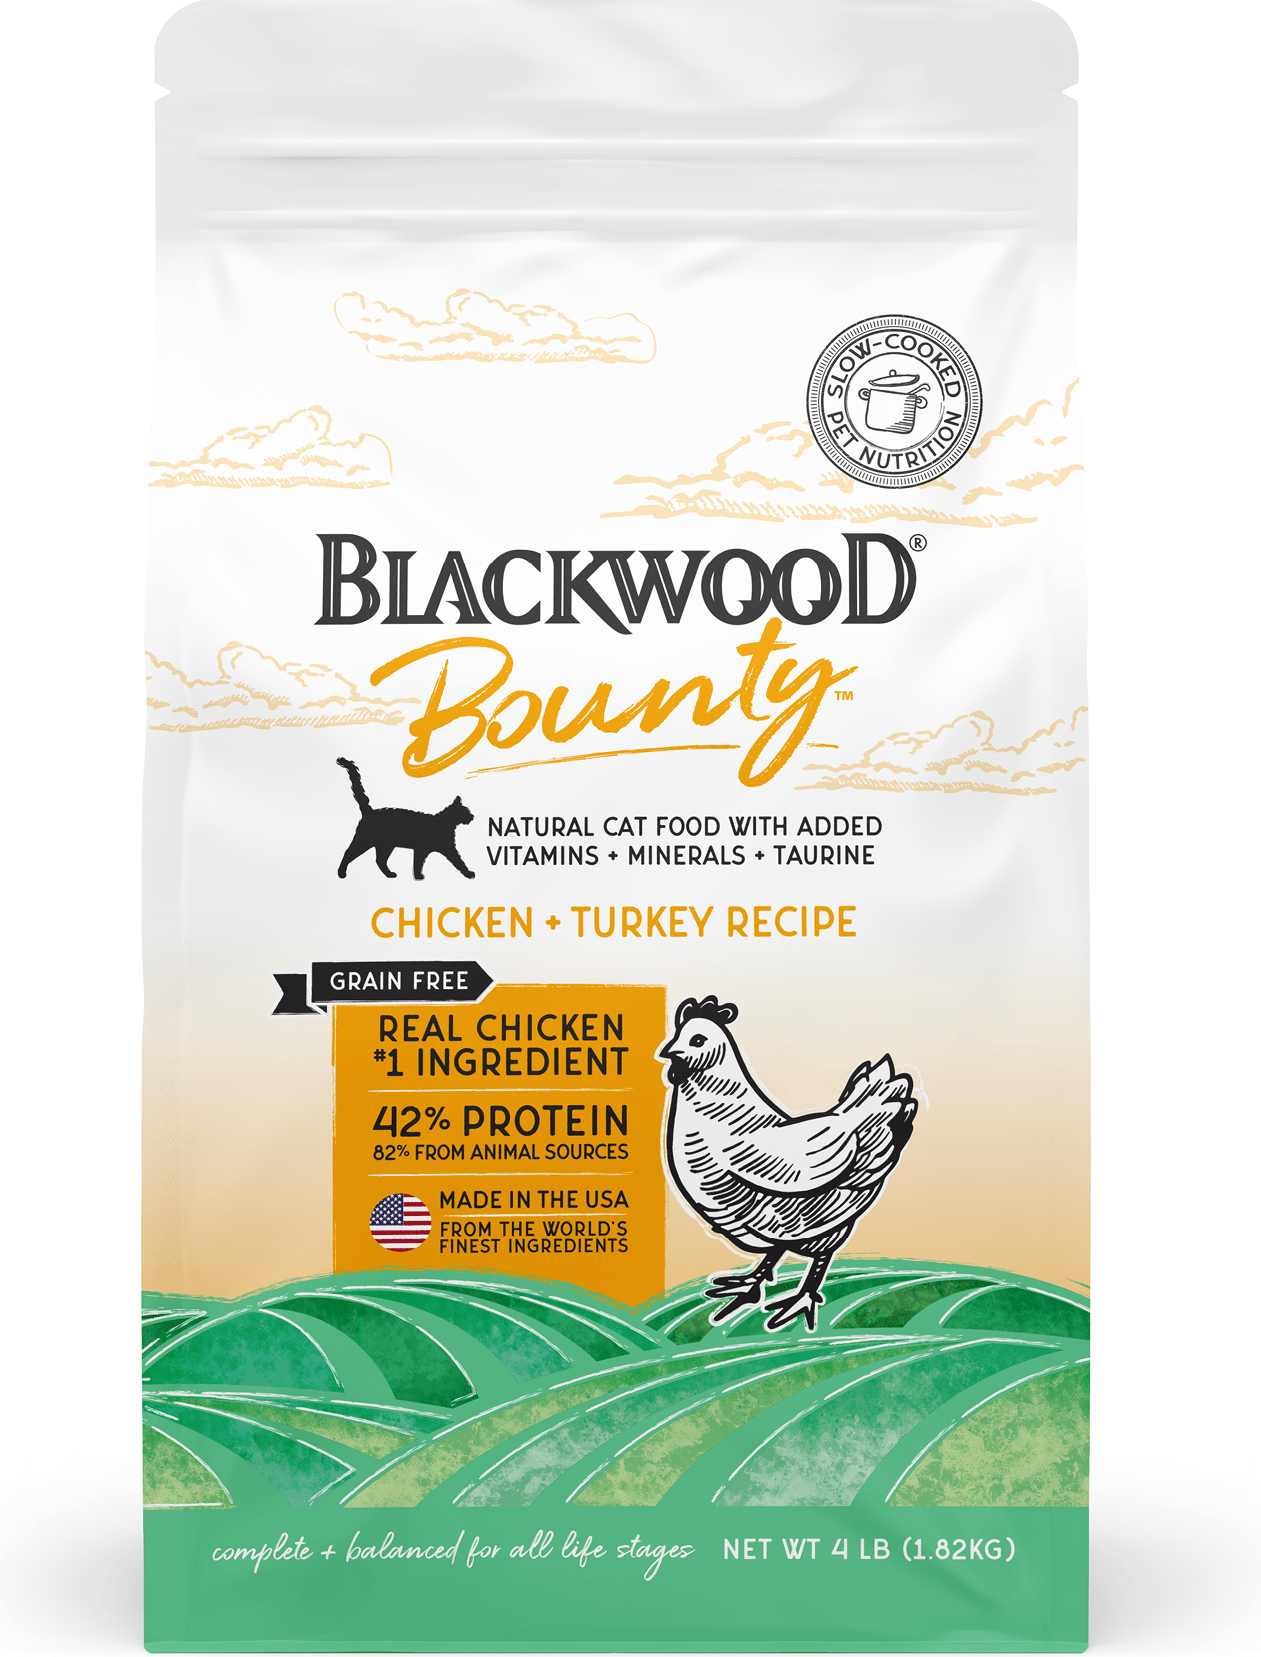 Blackwood Bounty Grain Free Grain-Free Chicken & Turkey Recipe